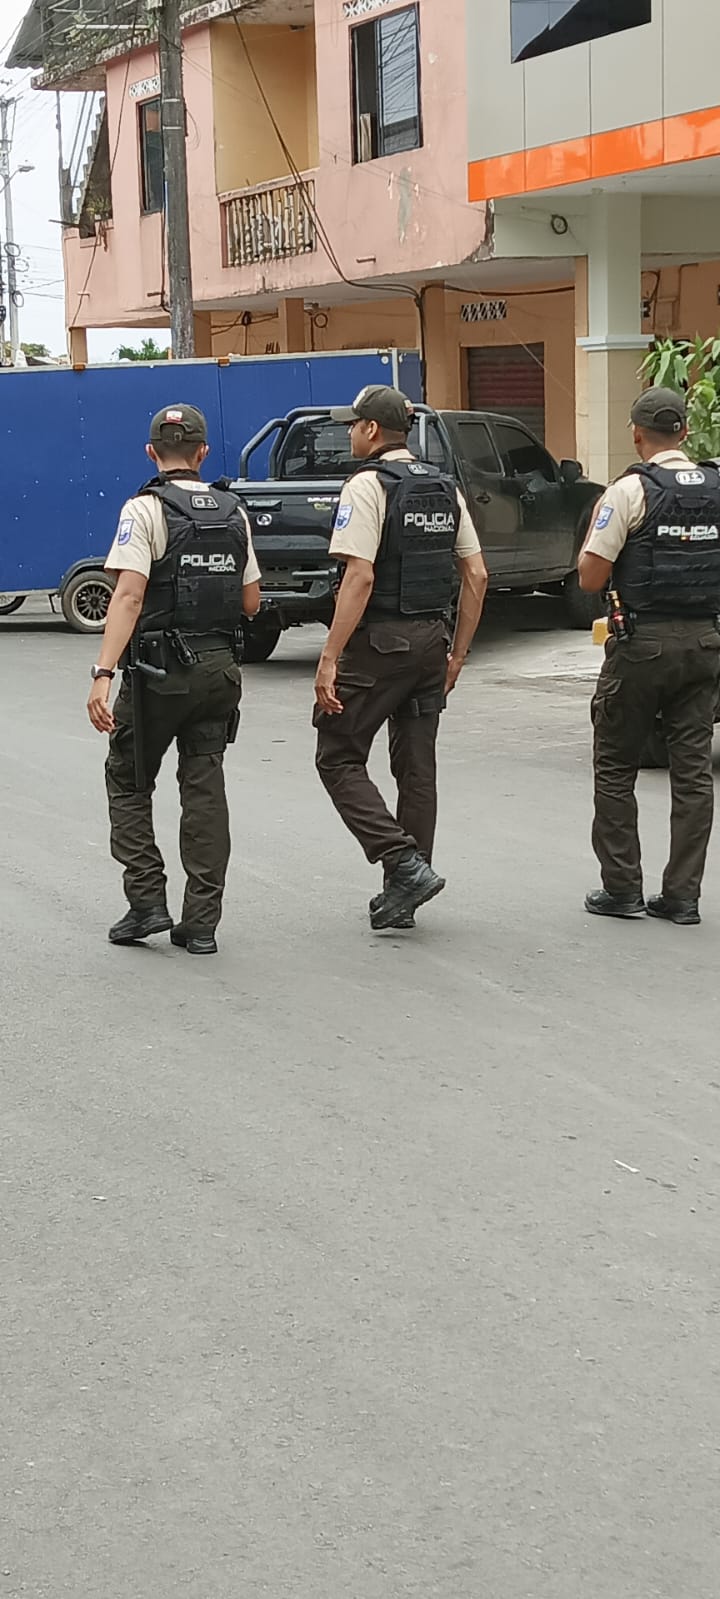 La Policía Nacional del Ecuador está de luto nuevamente